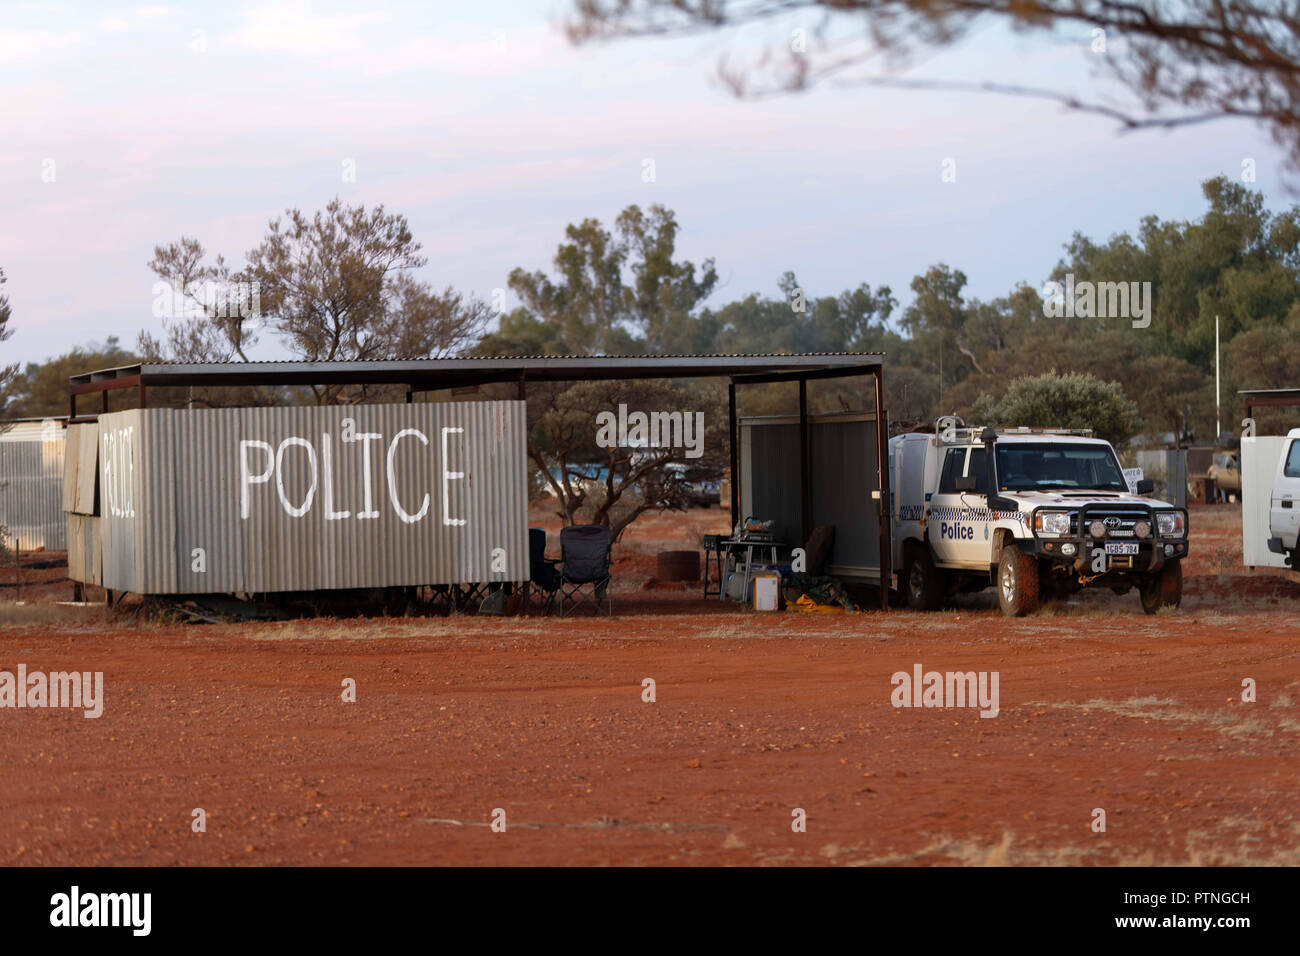 Polizei Camp an der Bush Pferderennen am Landor, 1000 km nördlich von Perth, Western Australia. Stockfoto